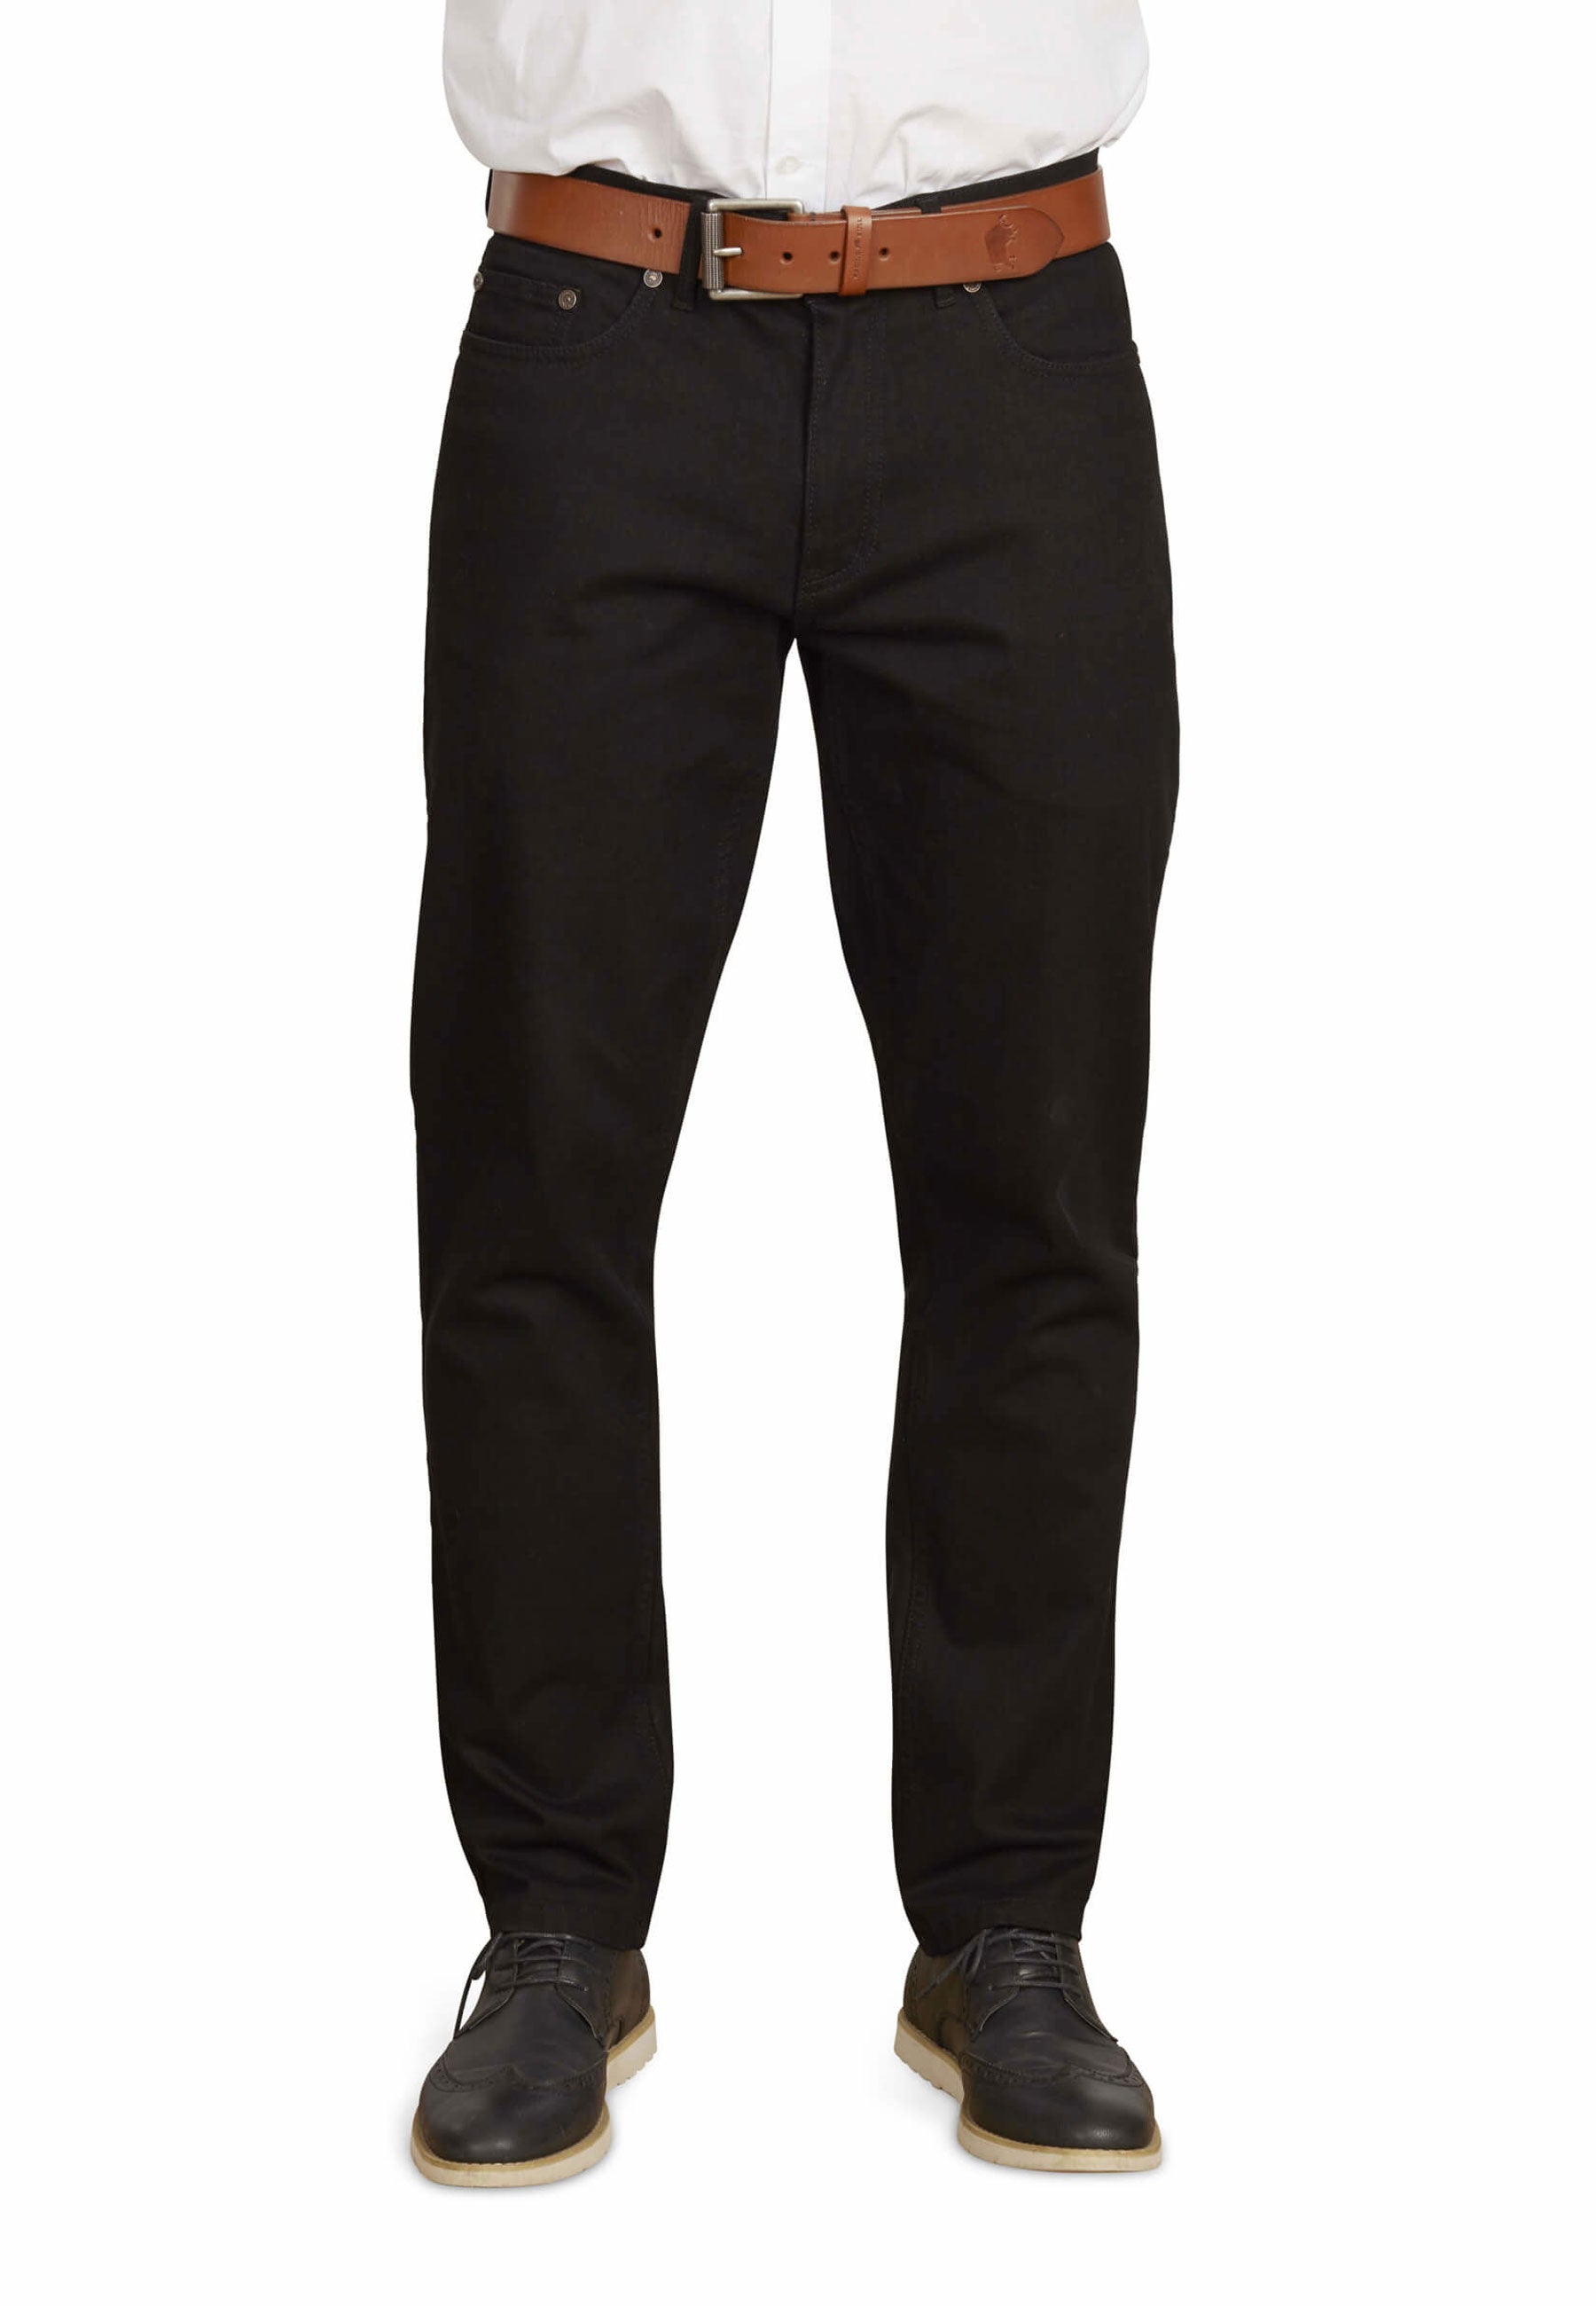 order tapered denim trouser black XS - デニム